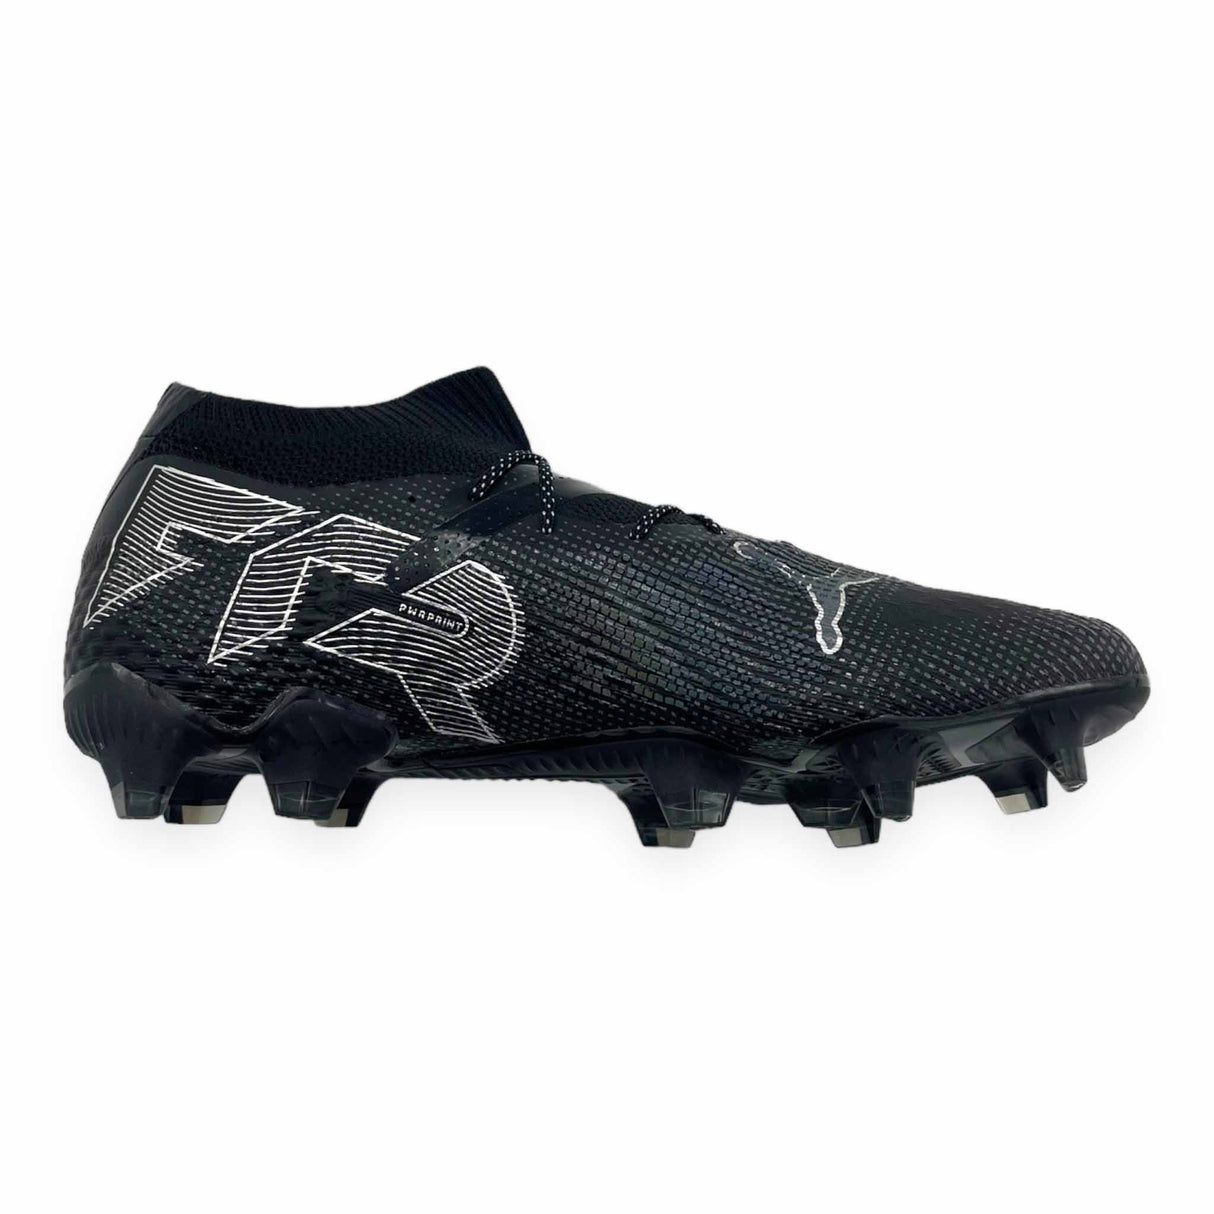 Puma Future 7 Ultimate FG/AG chaussures de soccer à crampons - Puma Black / Puma Silver